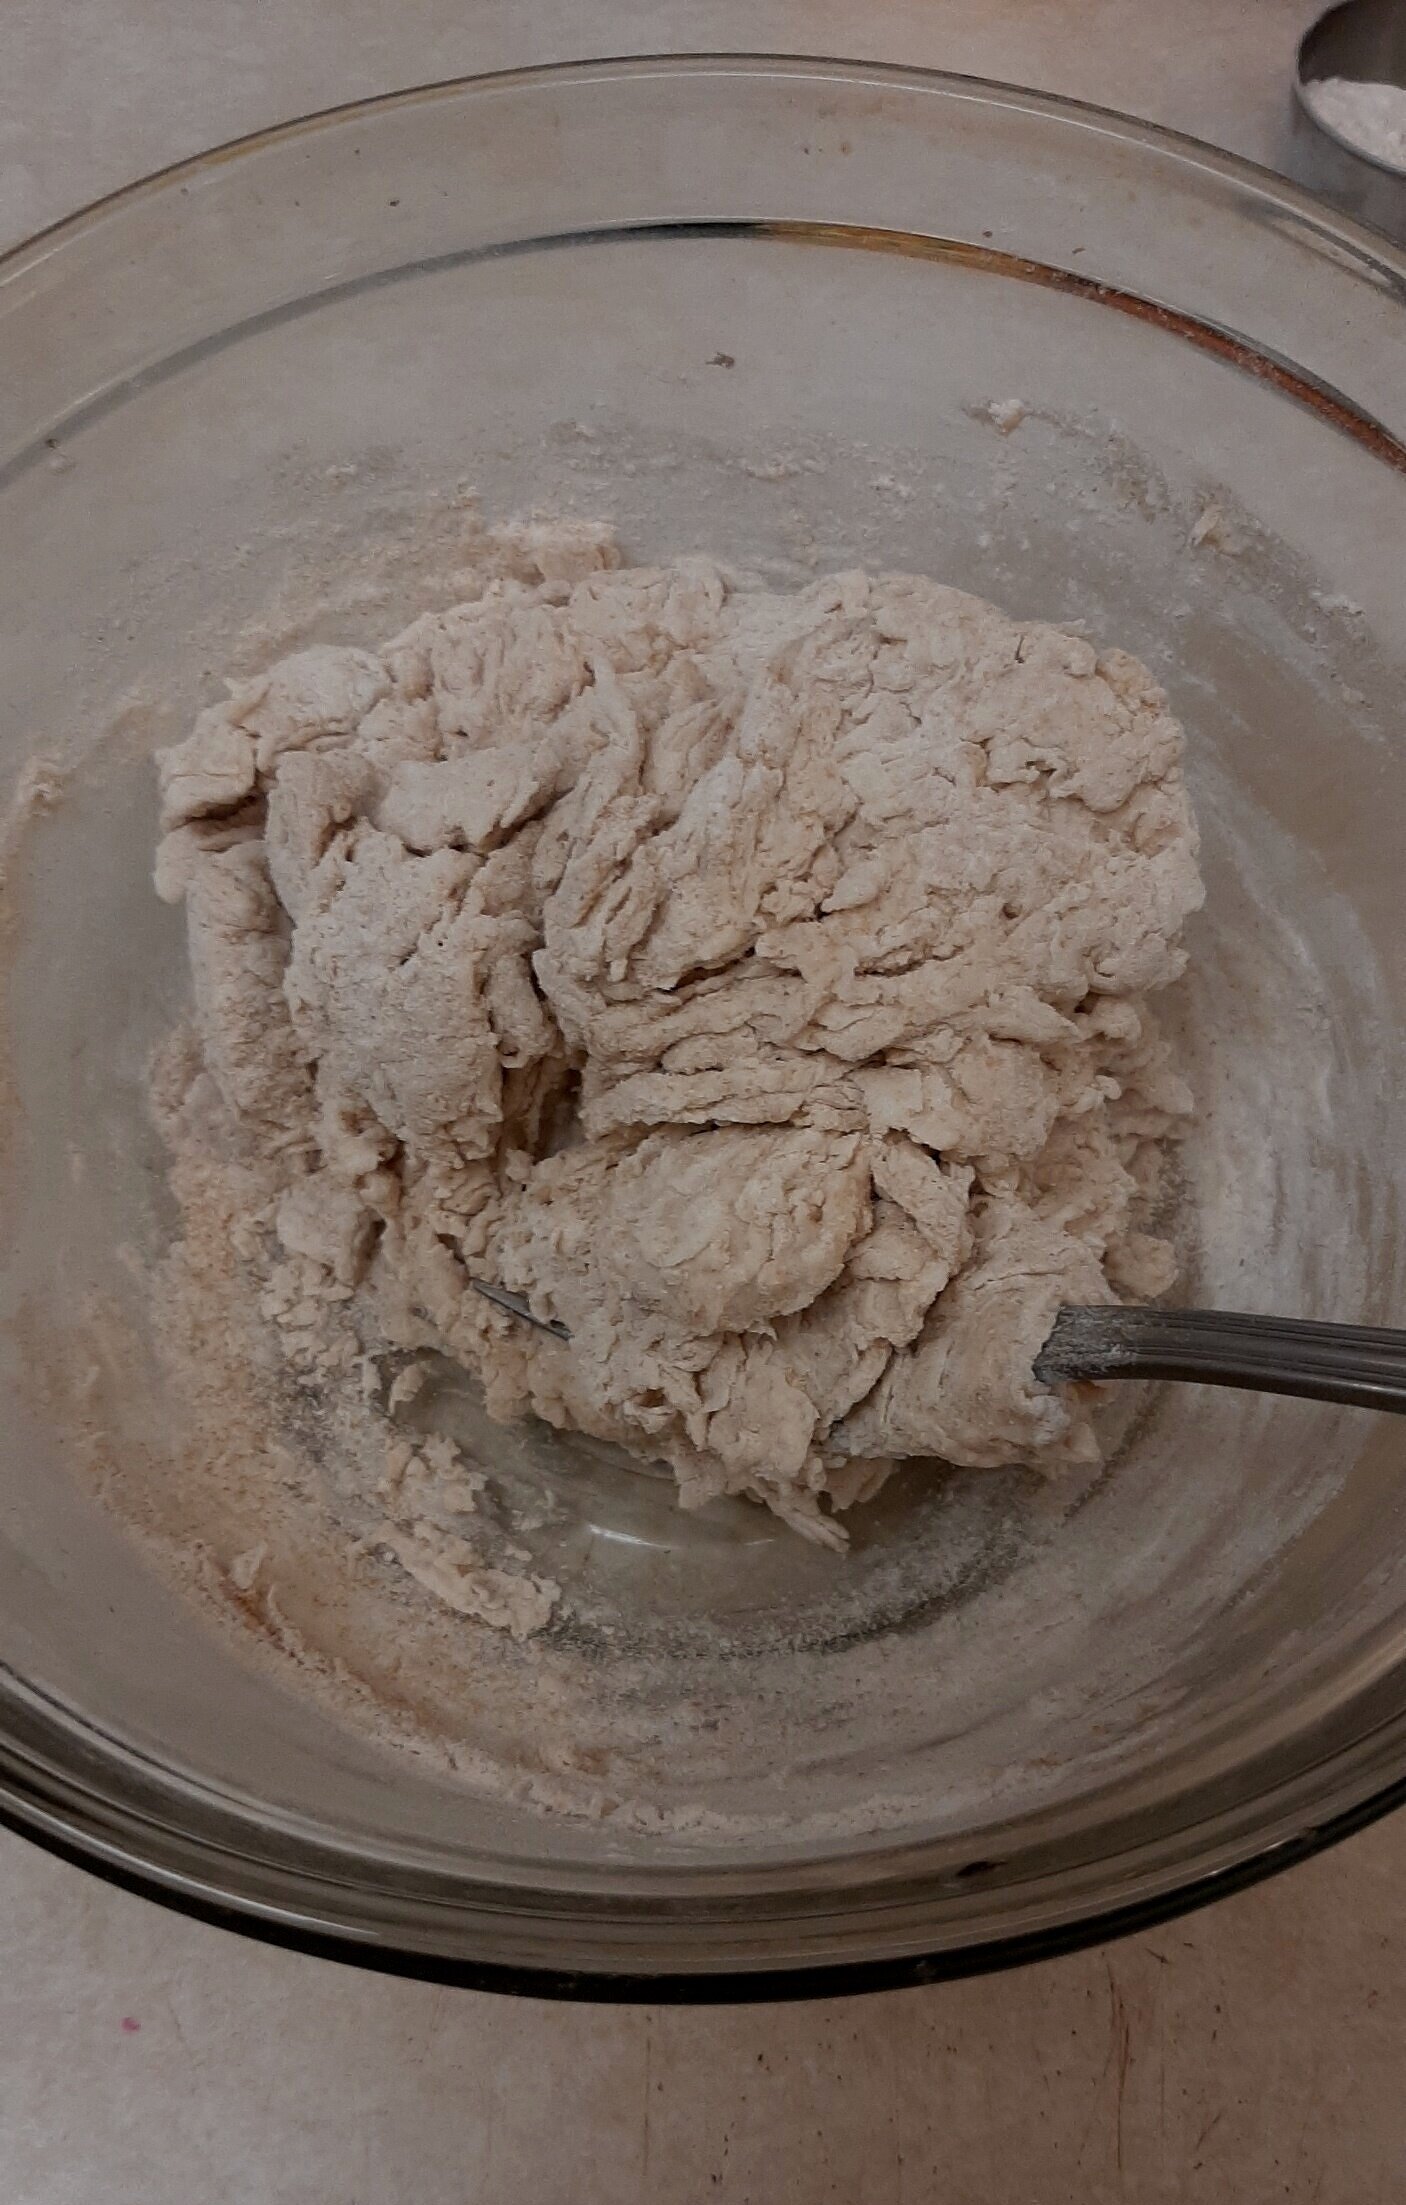 Stir until dough comes together